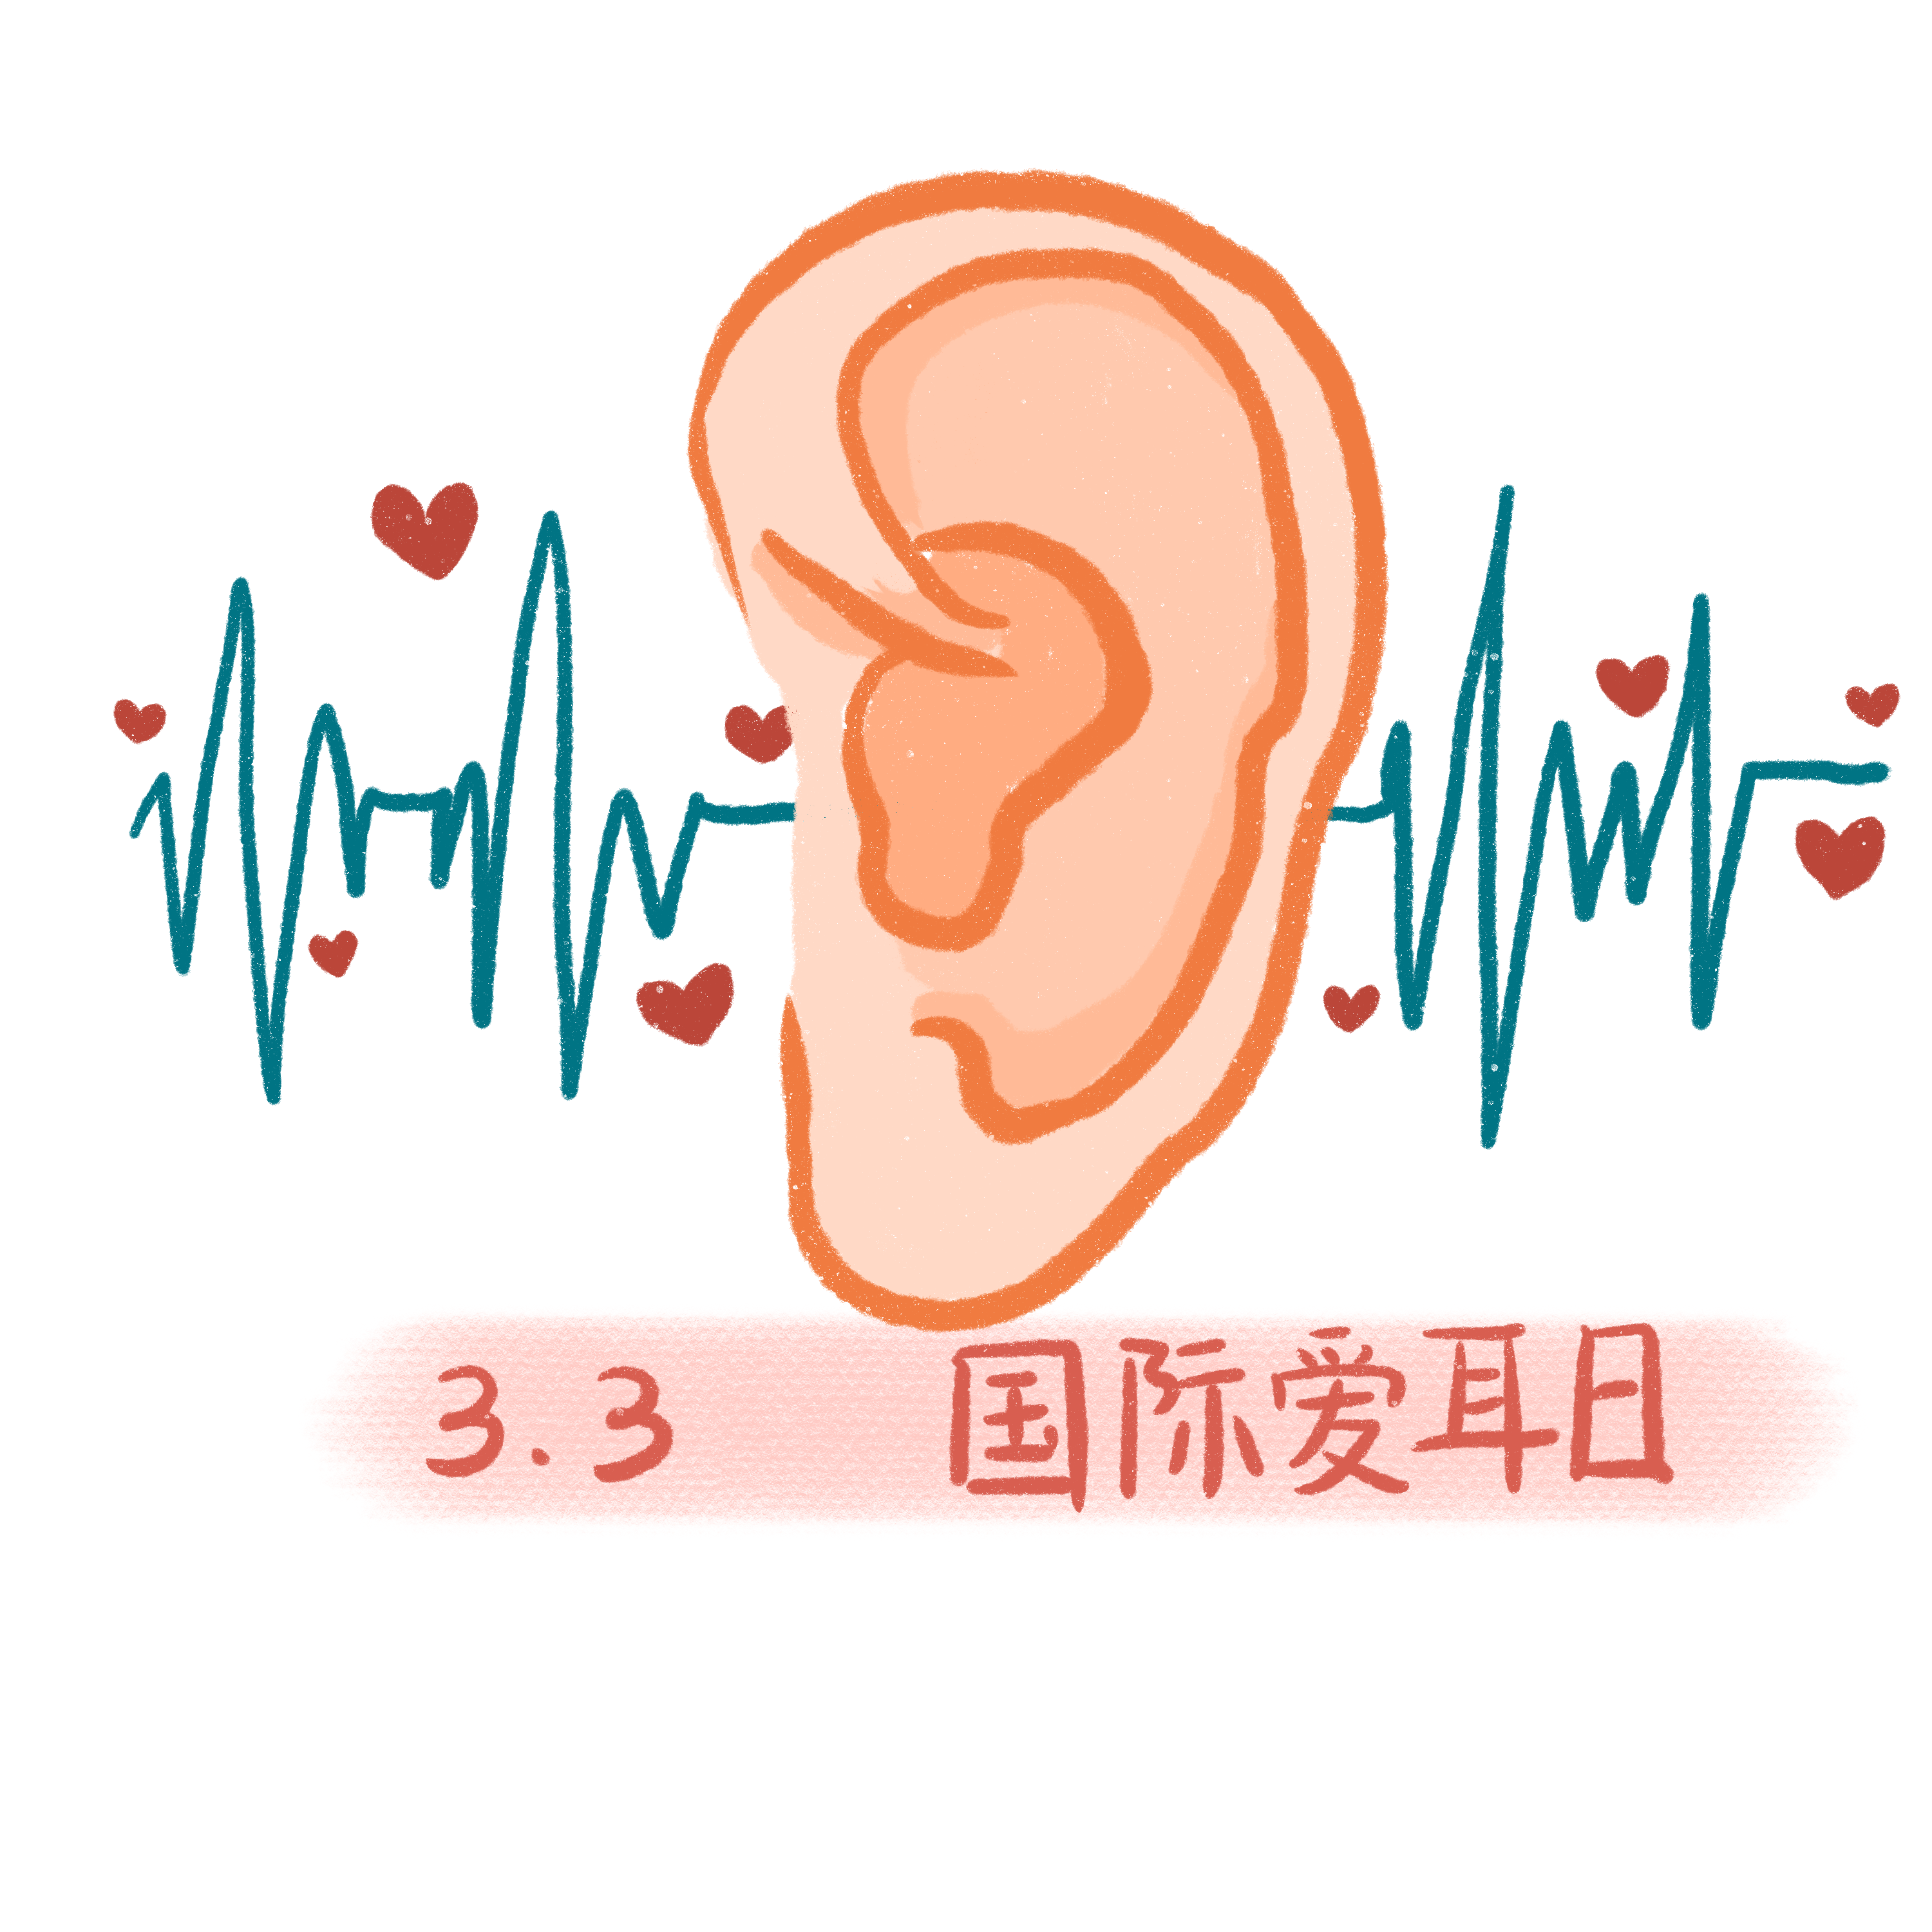 免费听力检查 | 您的听力还好么？萍矿总医院爱耳日义诊来啦！